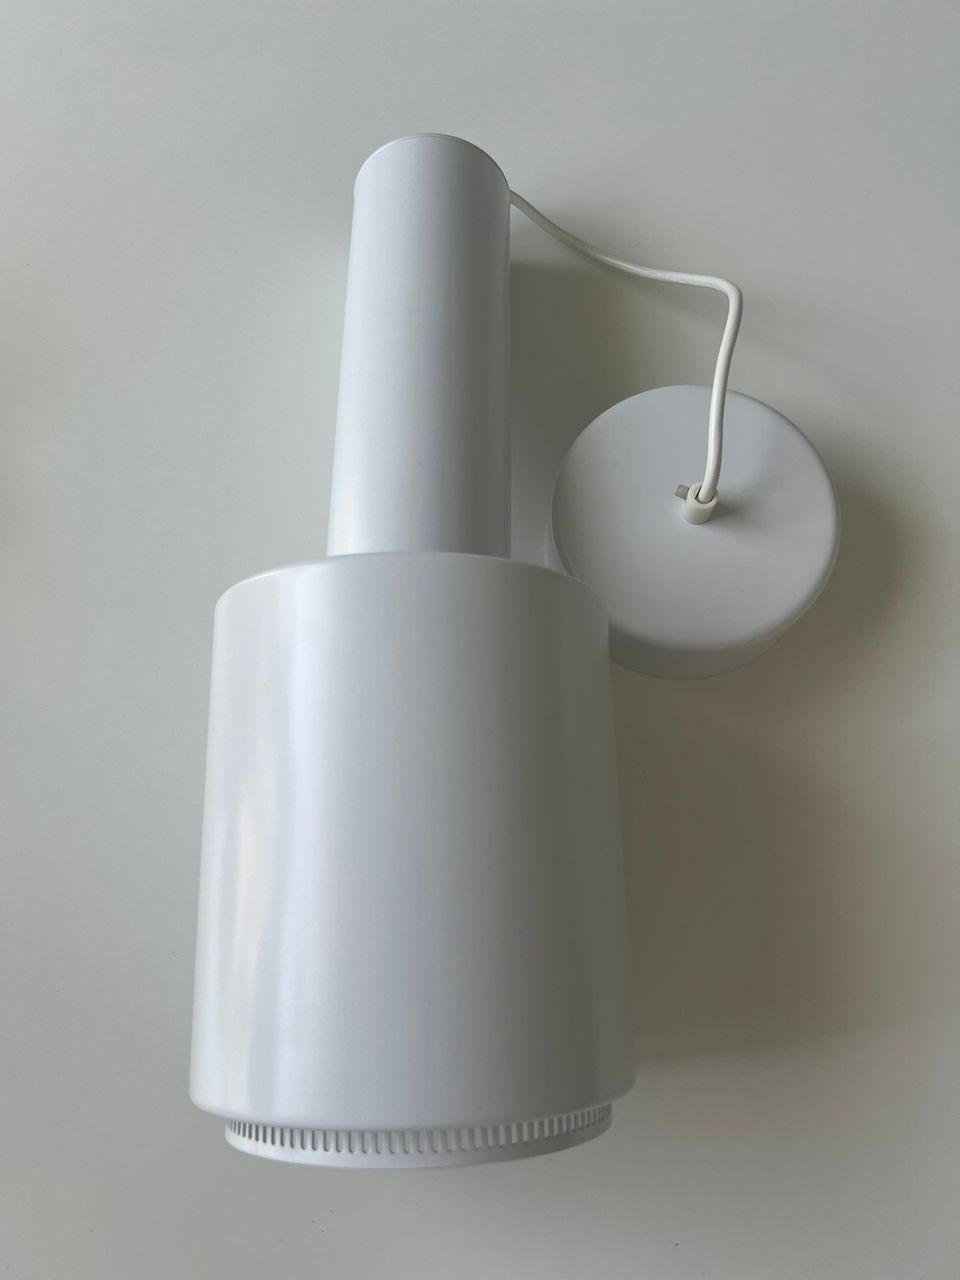 Artek Aalto A110 valaisin ”käsikranaatti”, kokovalkoinen